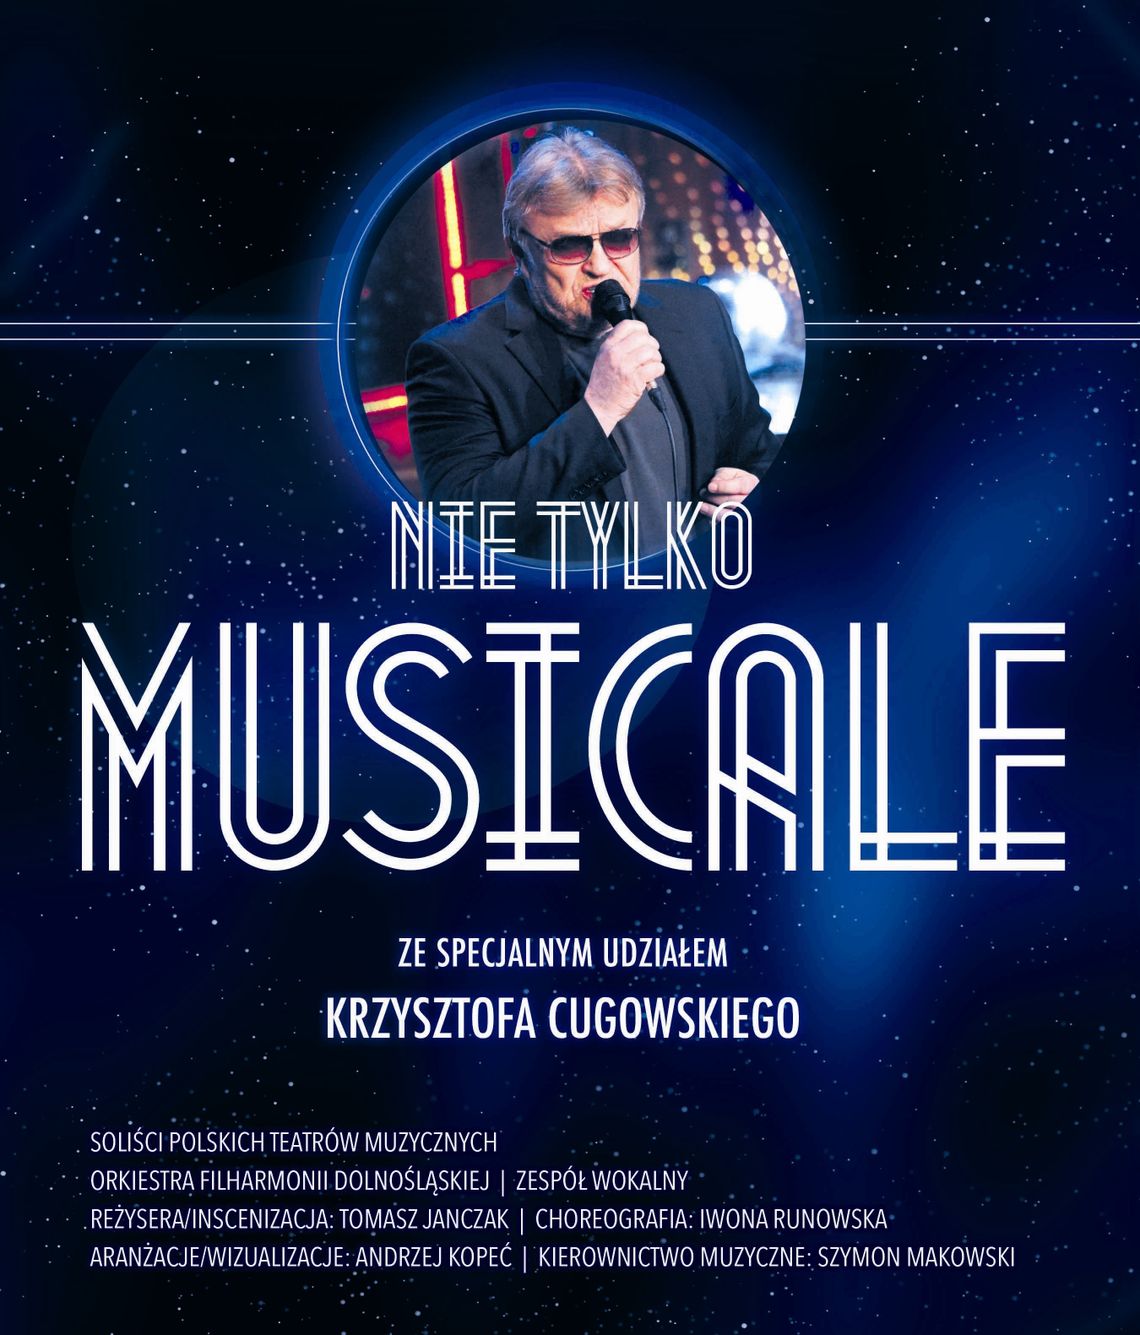 Nie tylko MUSICALE - koncert z udziałem Krzysztofa Cugowskiego w Kielcach 